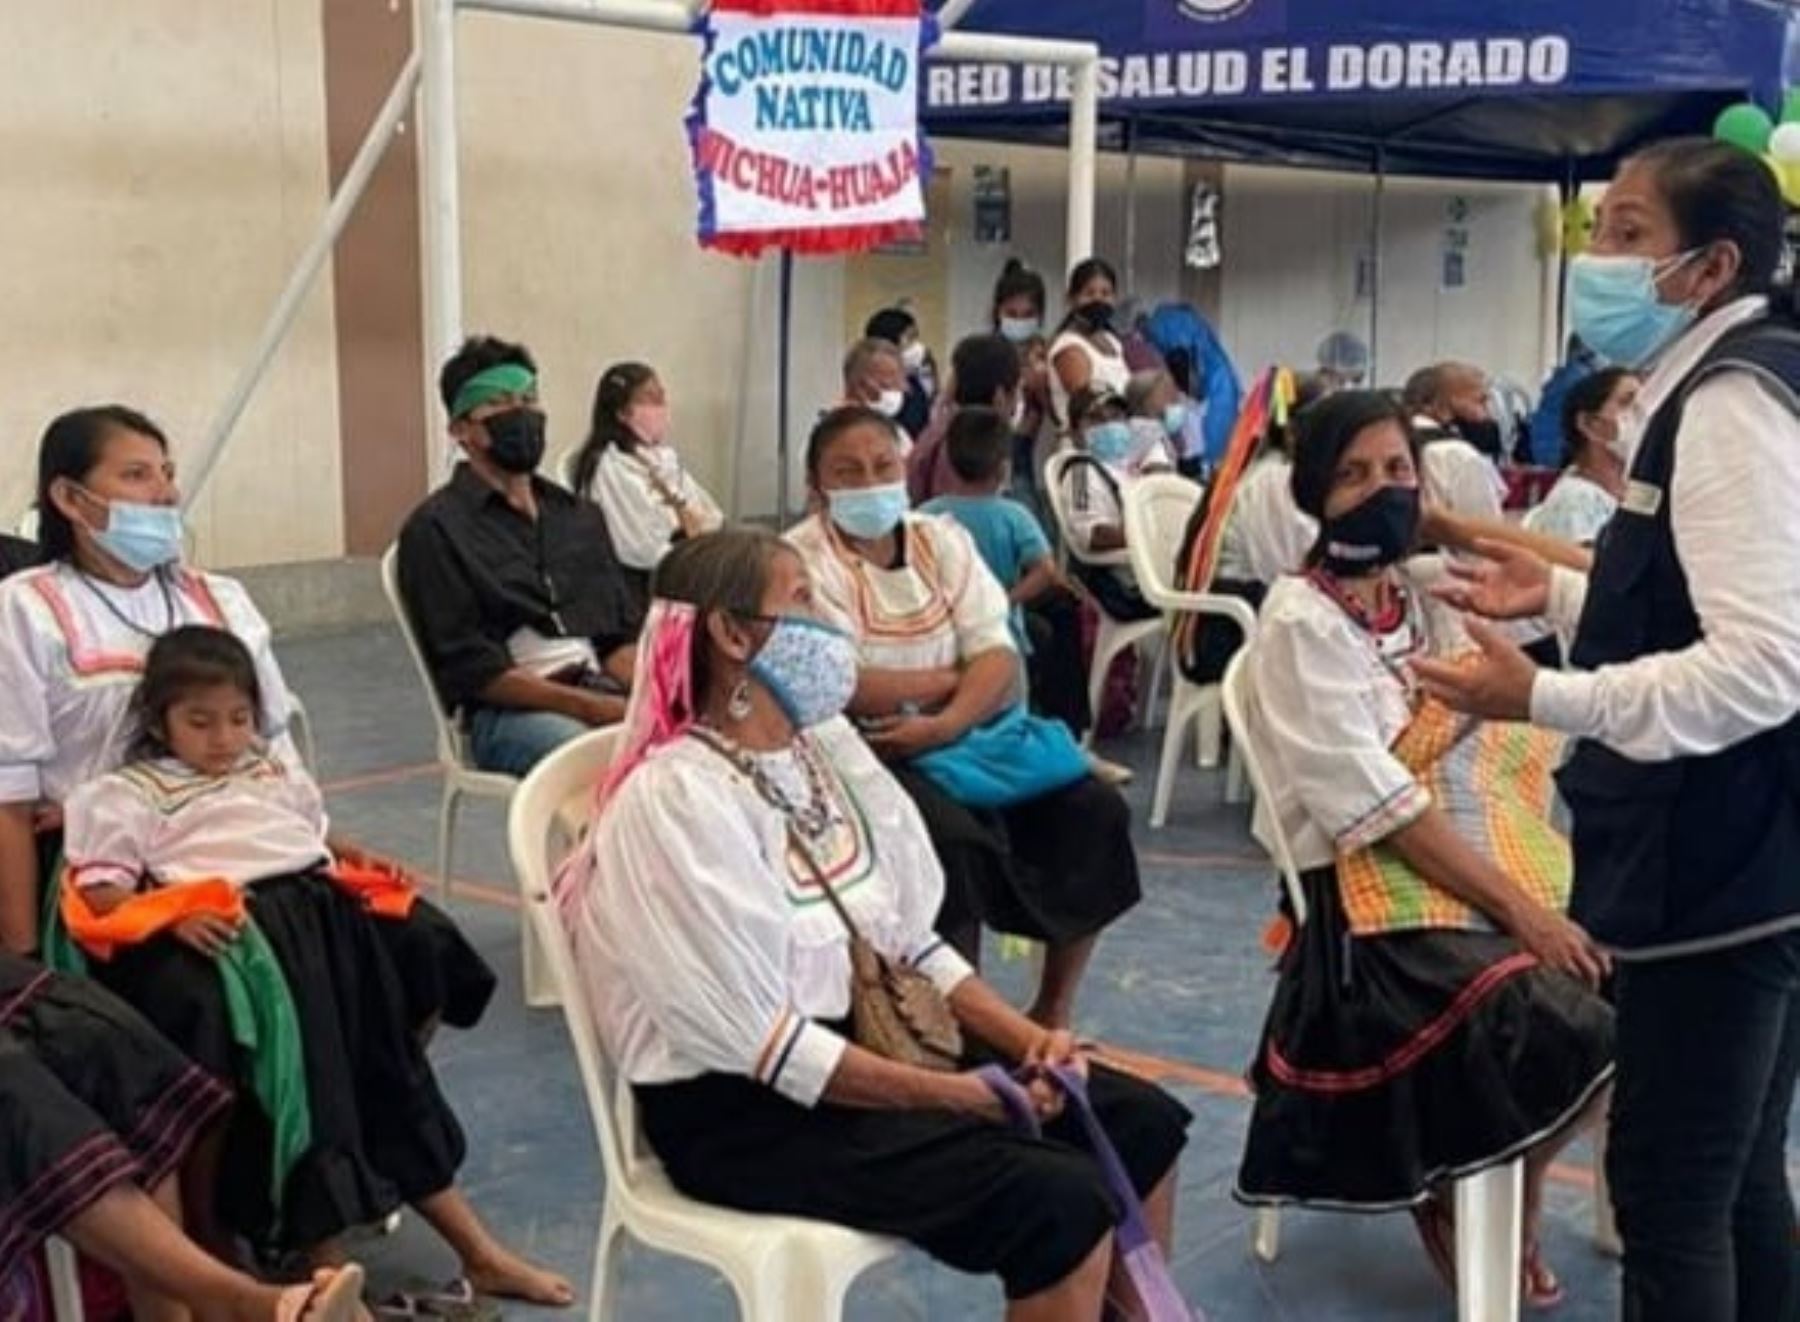 Brigadas de Salud del Minsa brindan atención integral de salud contra el friaje y bajas temperaturas a pobladores de comunidades nativas de la provincia de El Dorado, región San Martín. ANDINA/Difusión